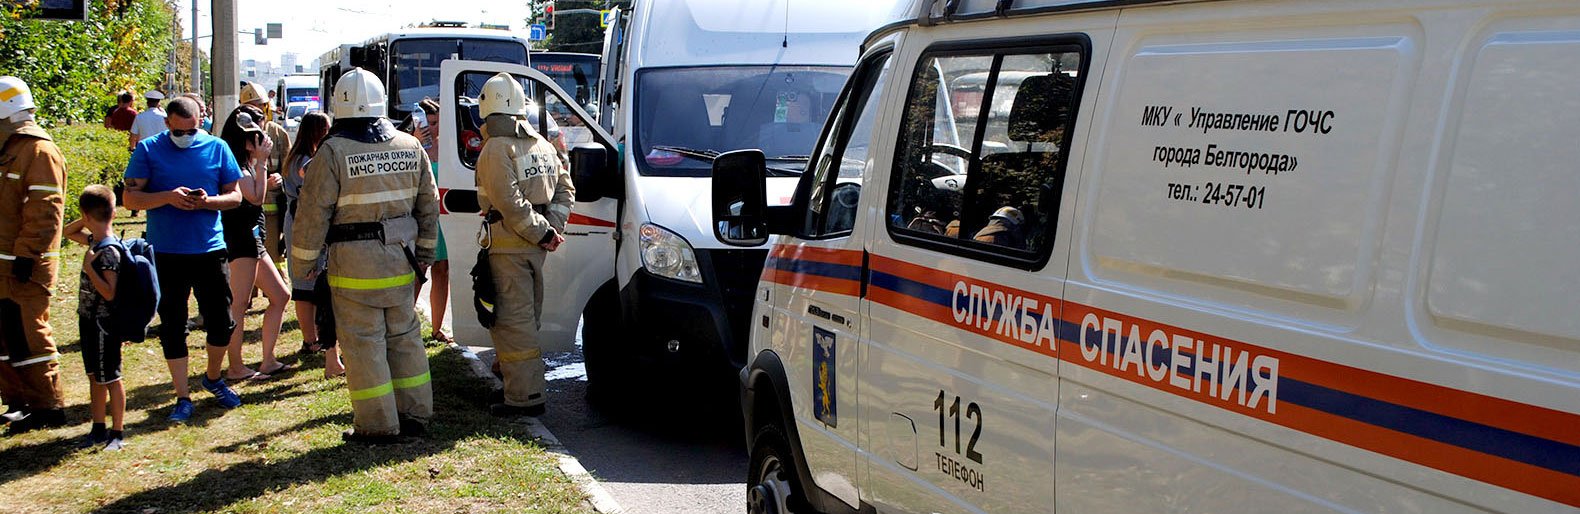 Три человека попали под колёса авто на дорогах Белгородской области за сутки